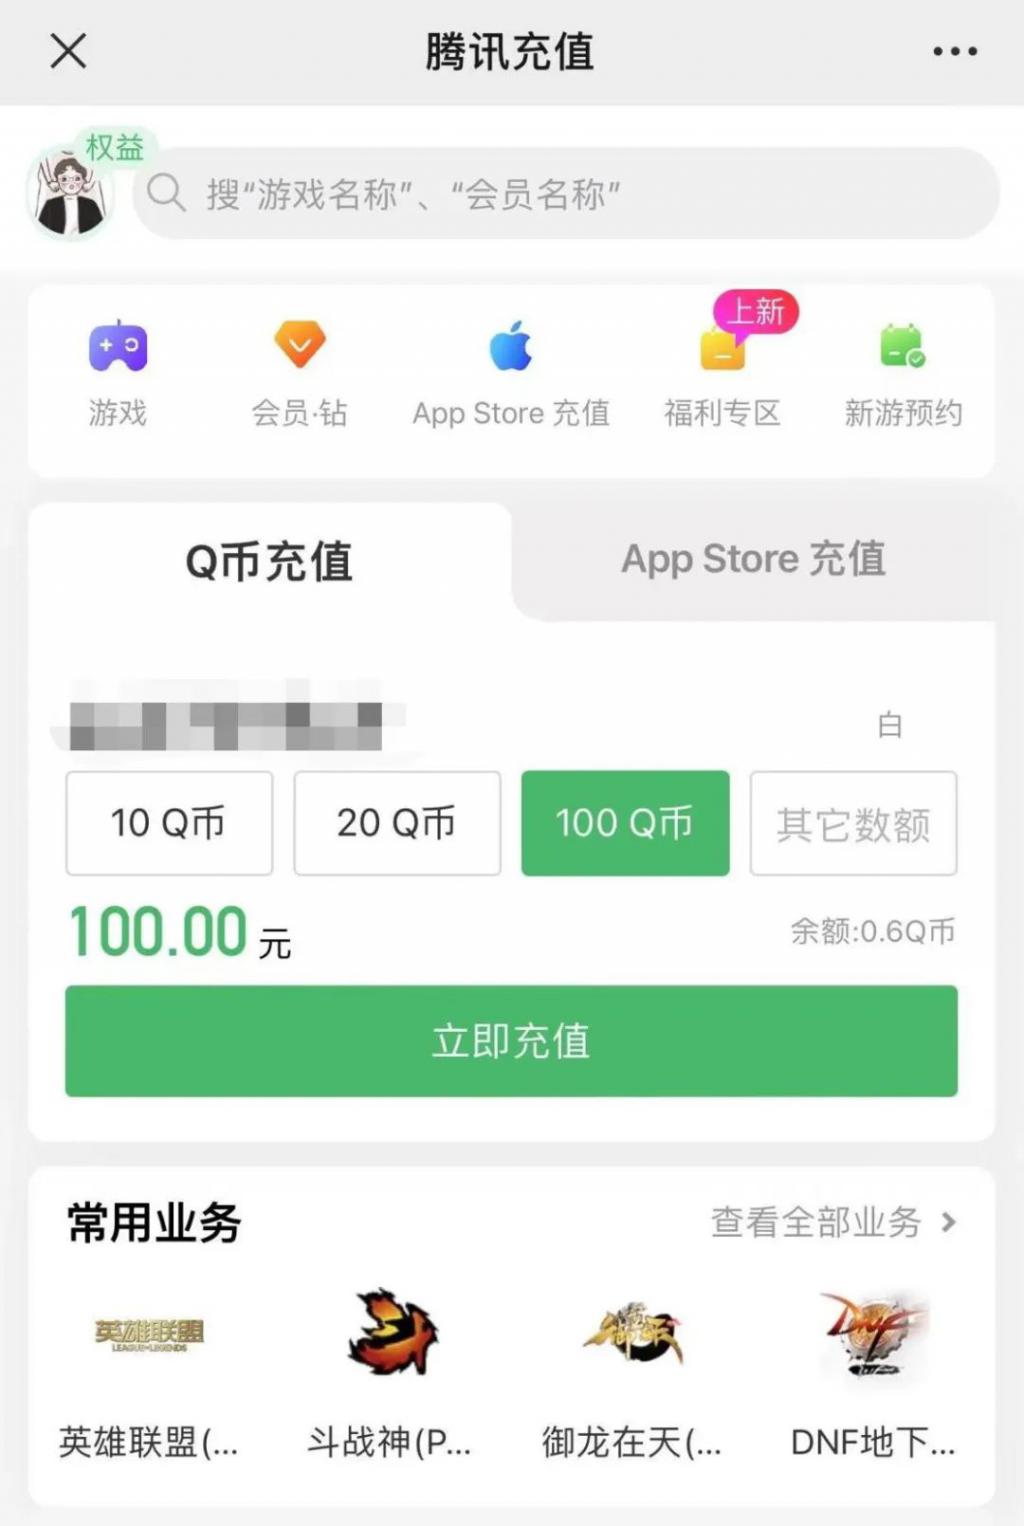 腾澳门十大娱乐网站讯QQ最新新闻